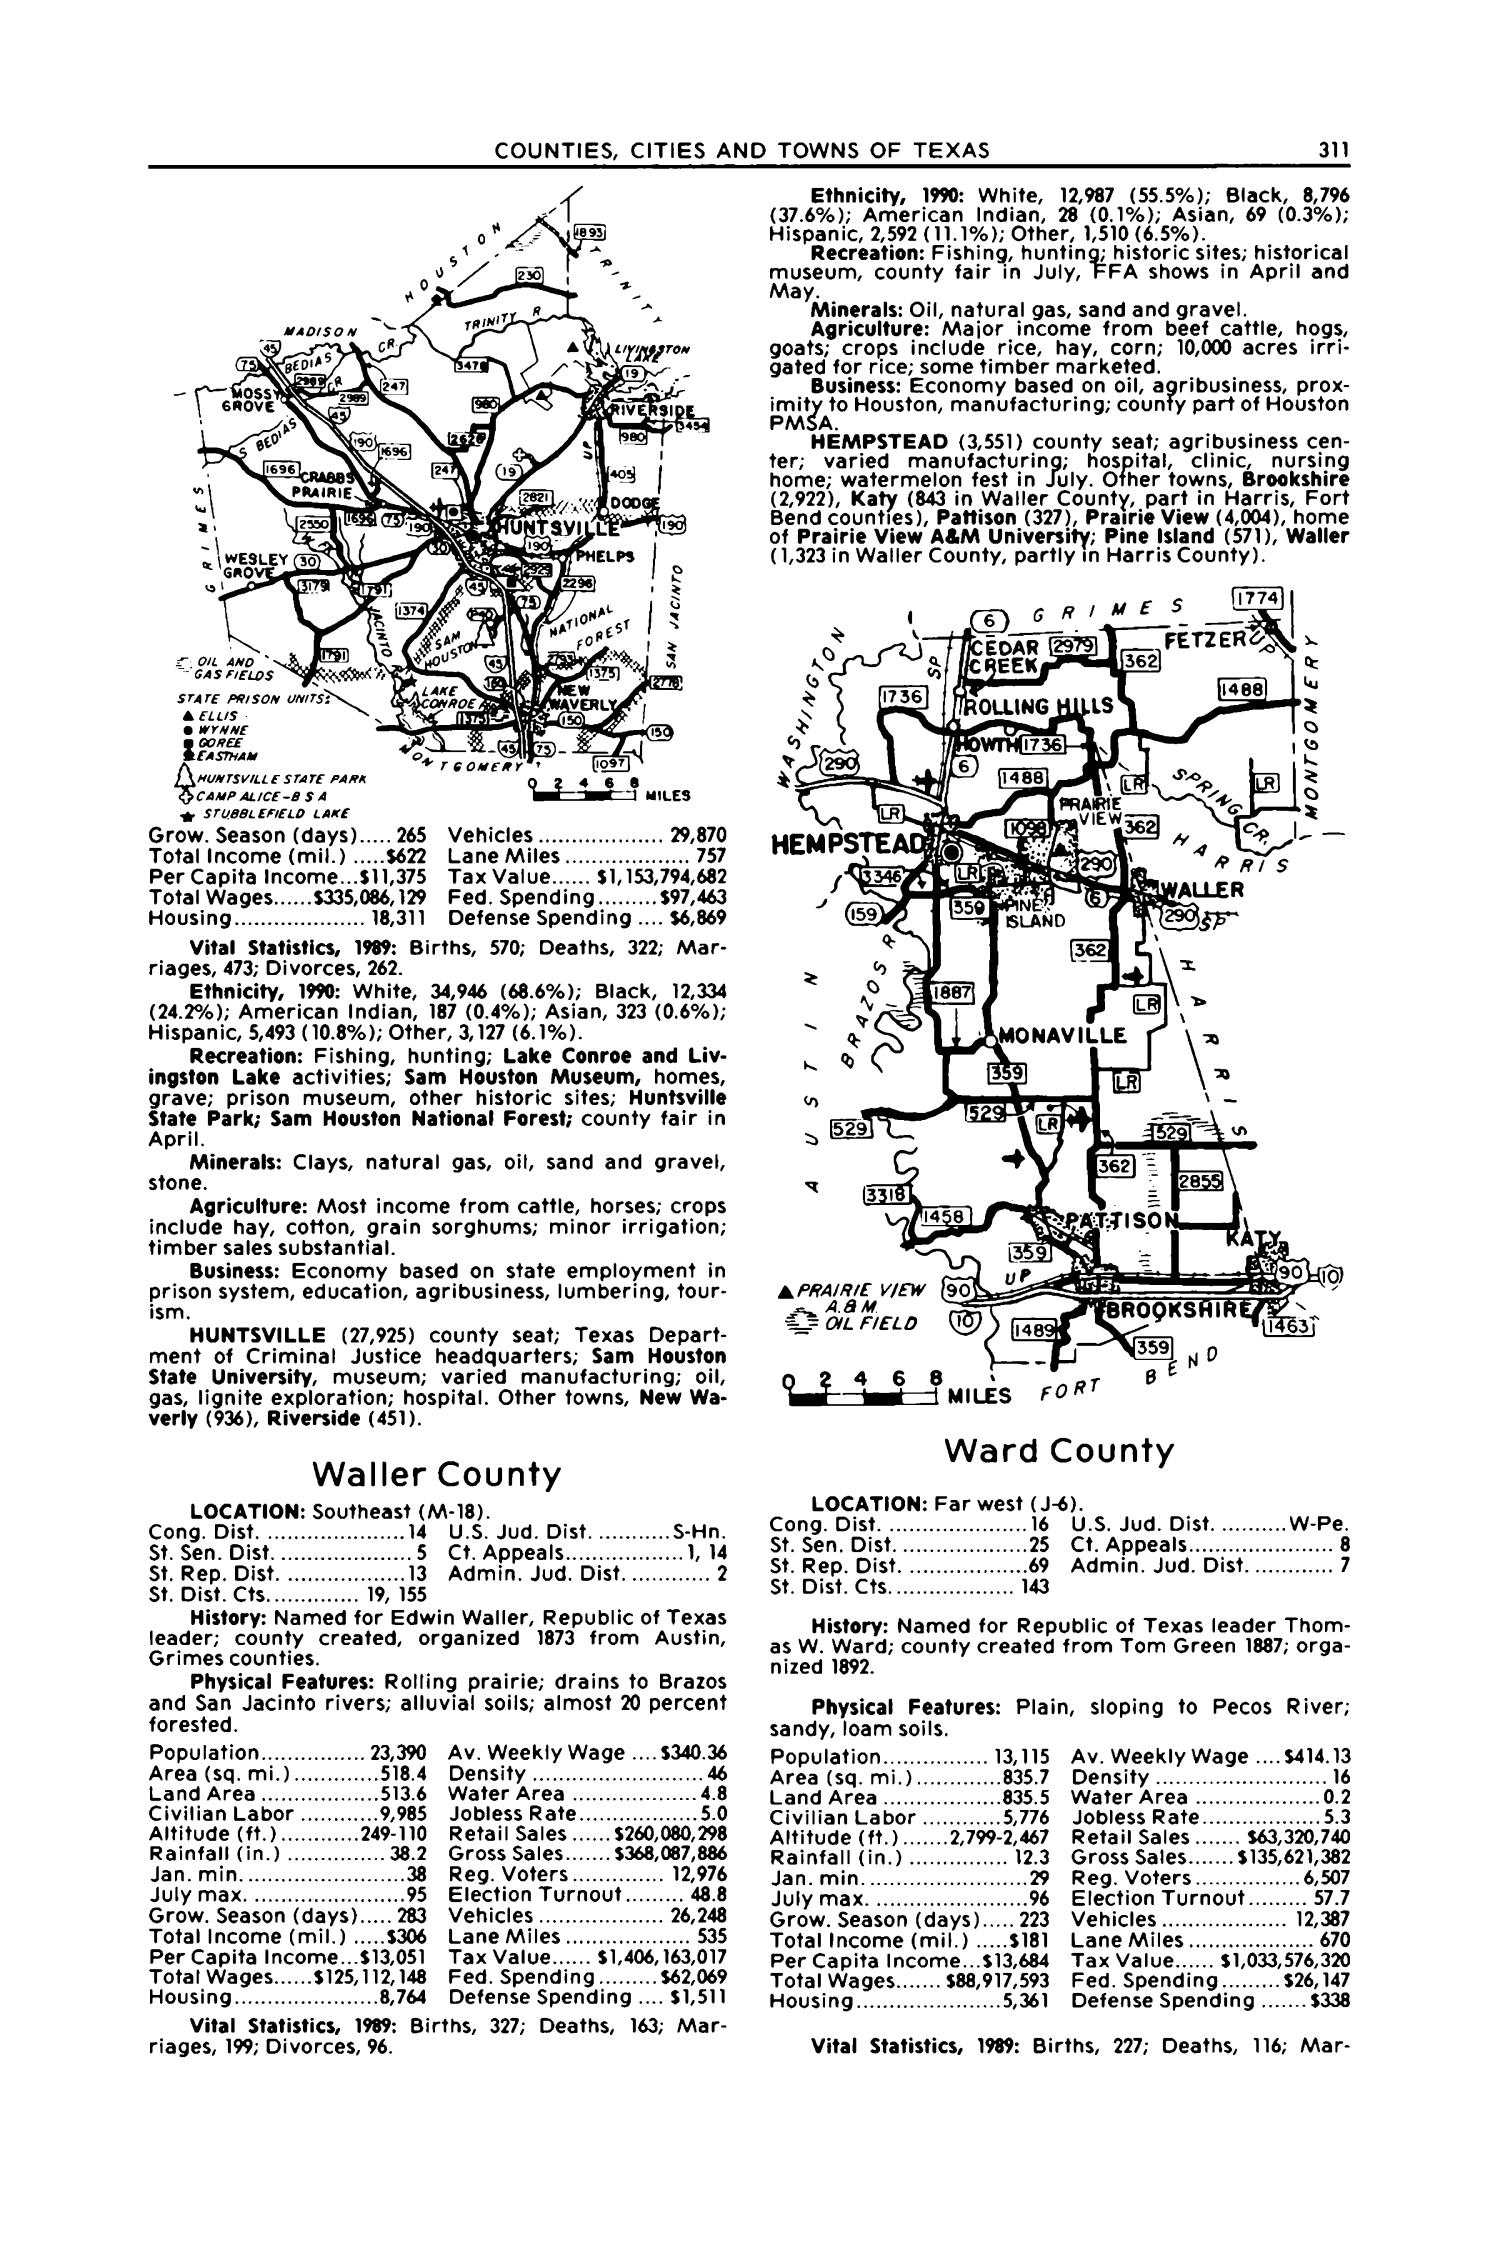 Texas Almanac, 1992-1993
                                                
                                                    311
                                                